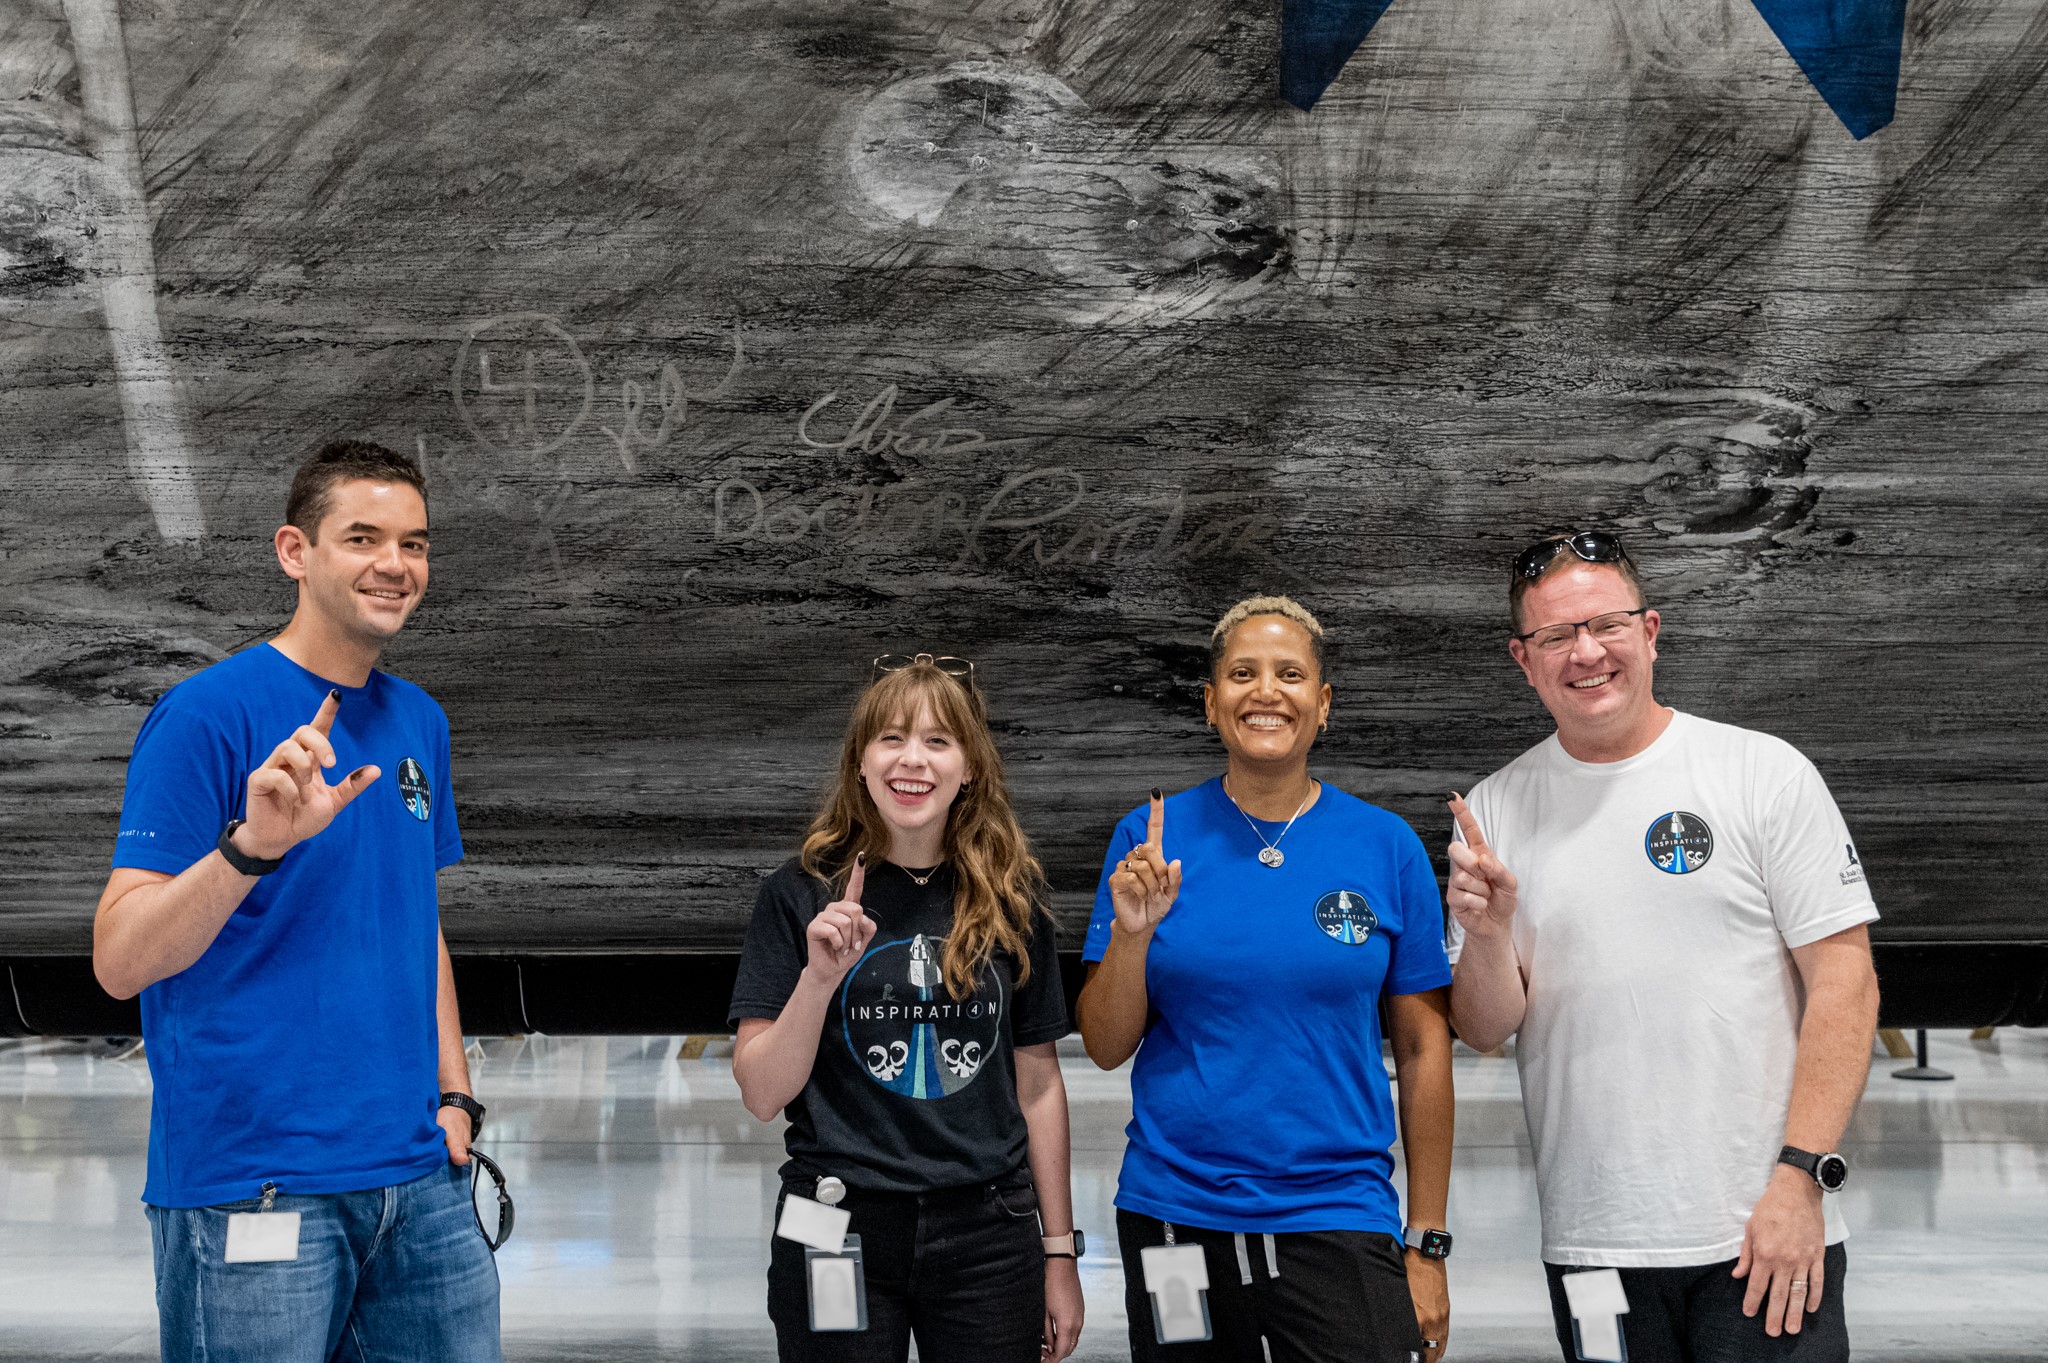 Załoga Inspiration4 podpisała się na pierwszym stopniu rakiety Falcon 9, który wyniesie ich na niską orbitę okołoziemską. Od lewej: Jared Isaacman, Hayley Arceneaux, Sian Proctor, Chris Sembroski (Źródło: Inspiration 4)